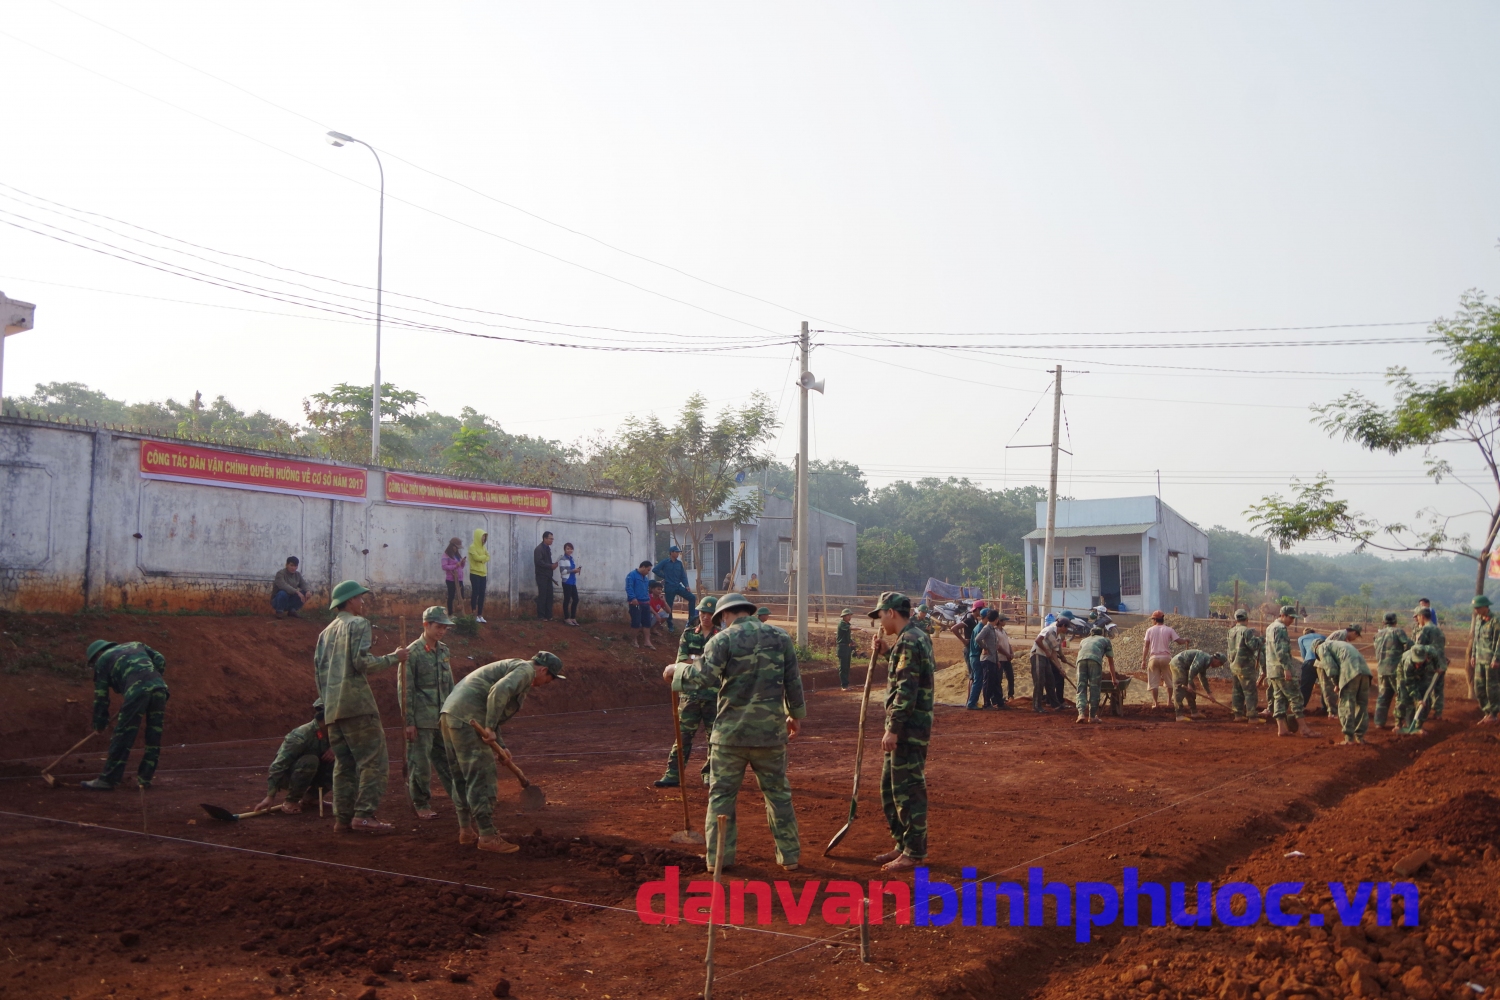 Cán bộ, chiến sỹ Bộ chỉ huy quân sự tỉnh cùng nhân dân “chung sức xây dựng nông thôn mới”, làm đường giao thông nông thôn trên địa bàn huyện Bù Gia Mập